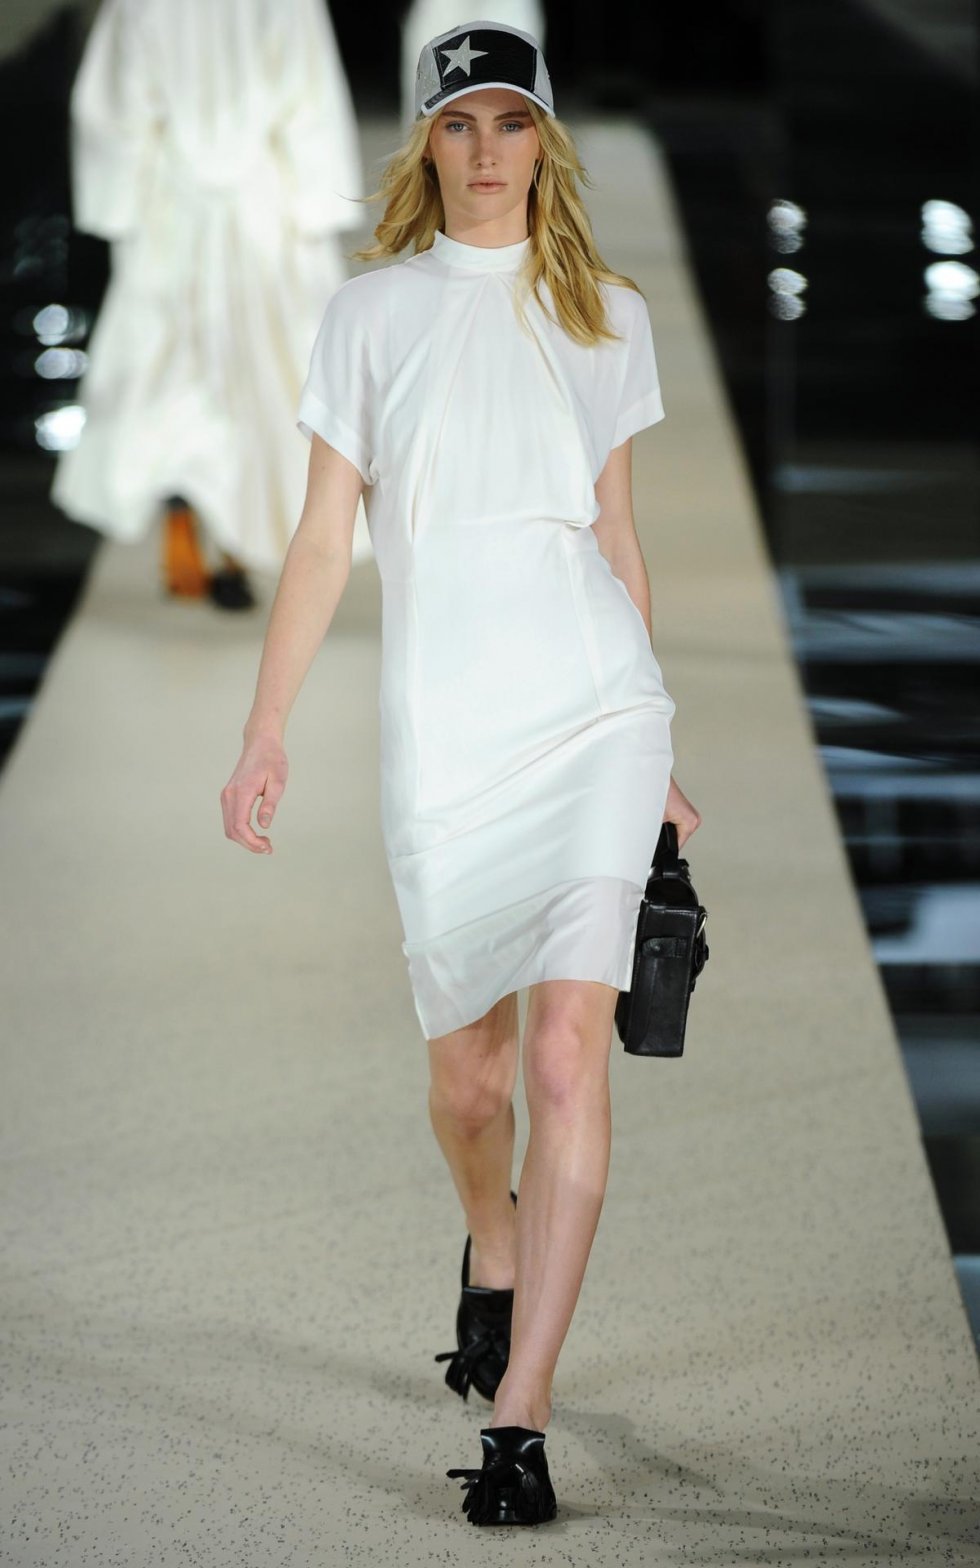 Hvid kjole fra Acne - Findes på www.Acnestudios.com (pressebillede) - Sæsonens sommerkjoler